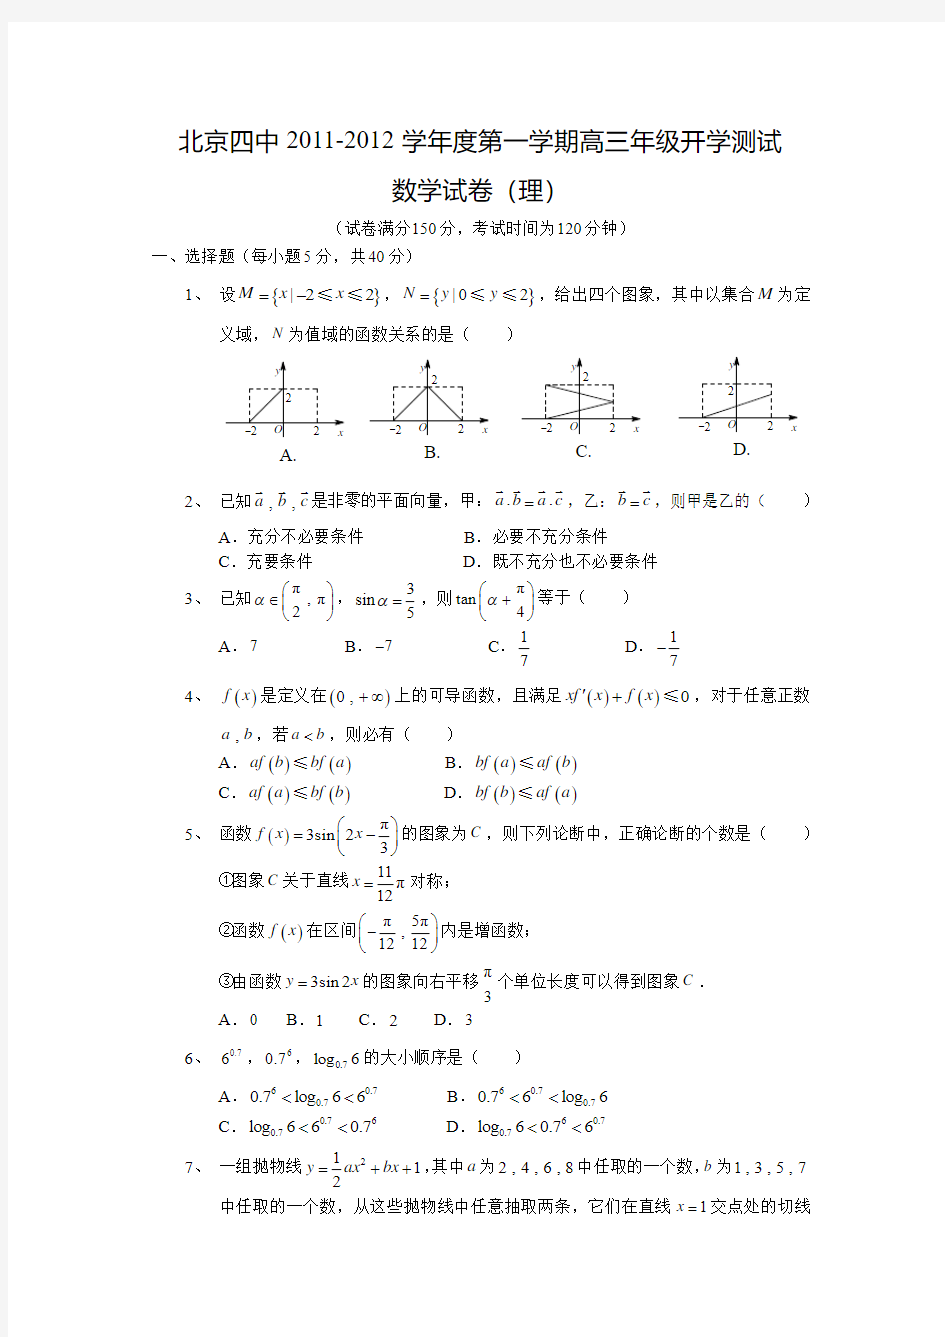 北京四中2011-2012学年度第一学期高三年级开学测试数学学科